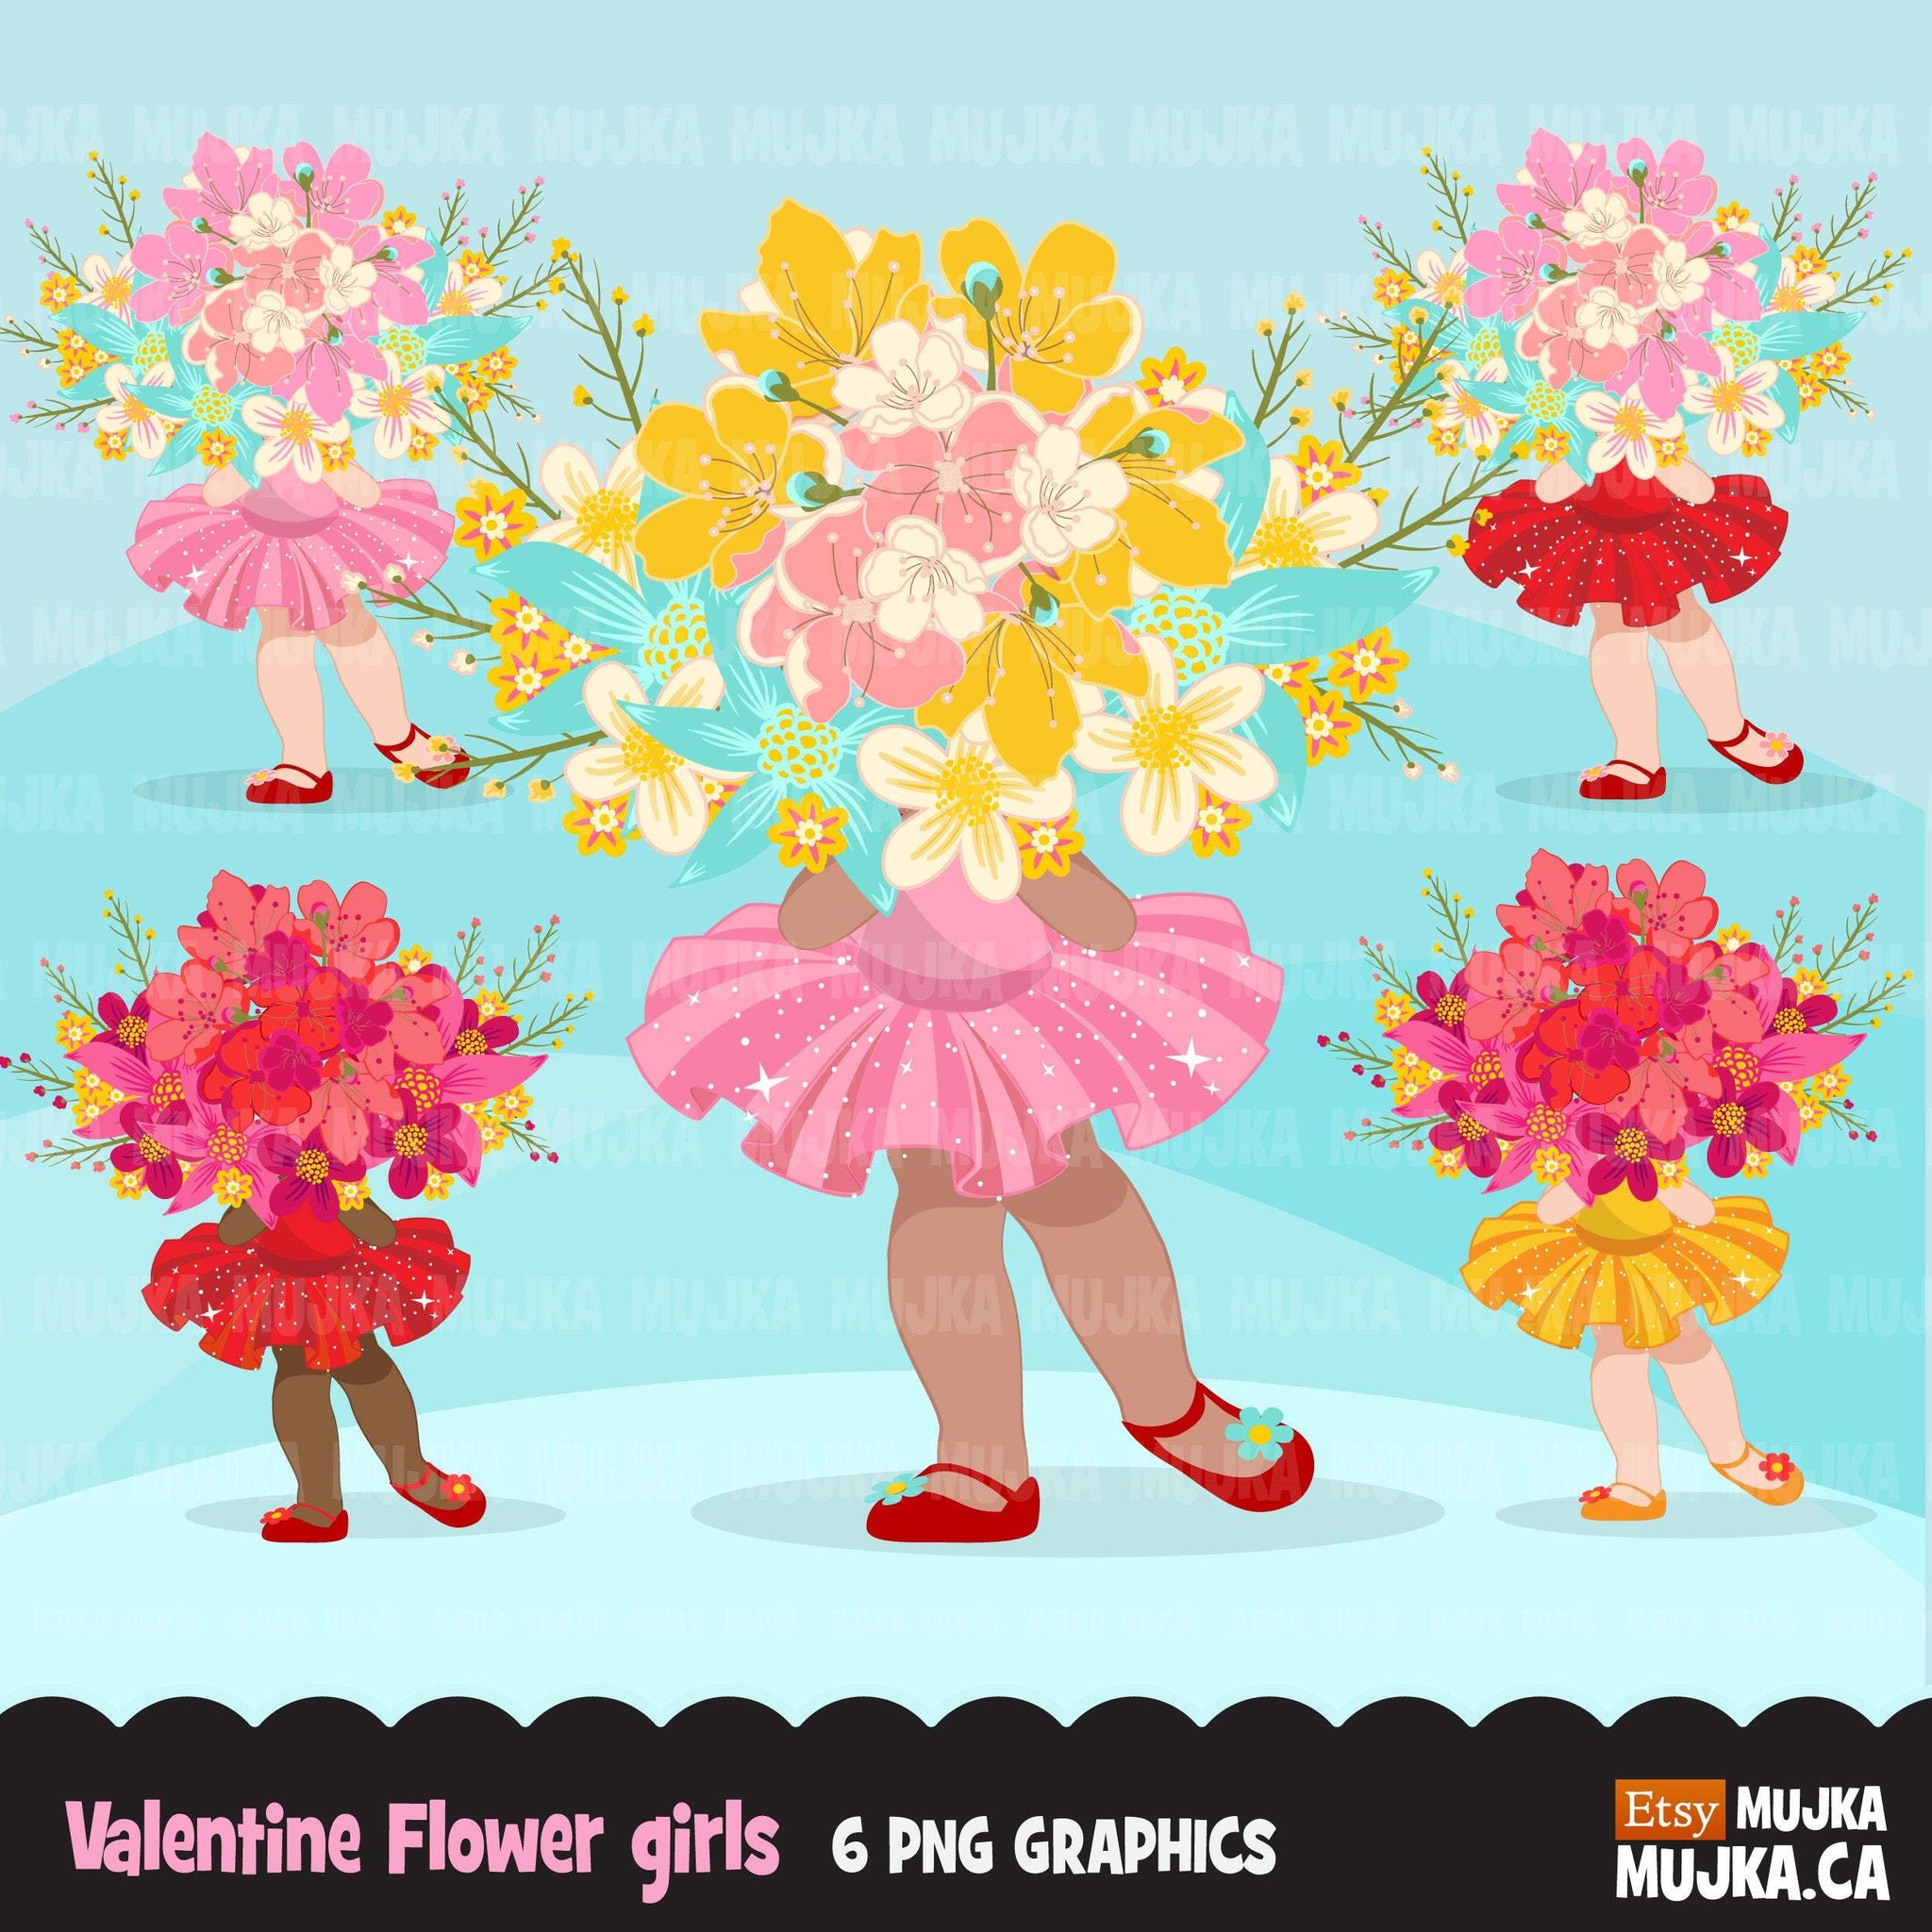 Imágenes prediseñadas de la niña de las flores del Día de San Valentín, niñas de tutú rosa con gráficos de ramo de flores, imágenes prediseñadas de uso comercial